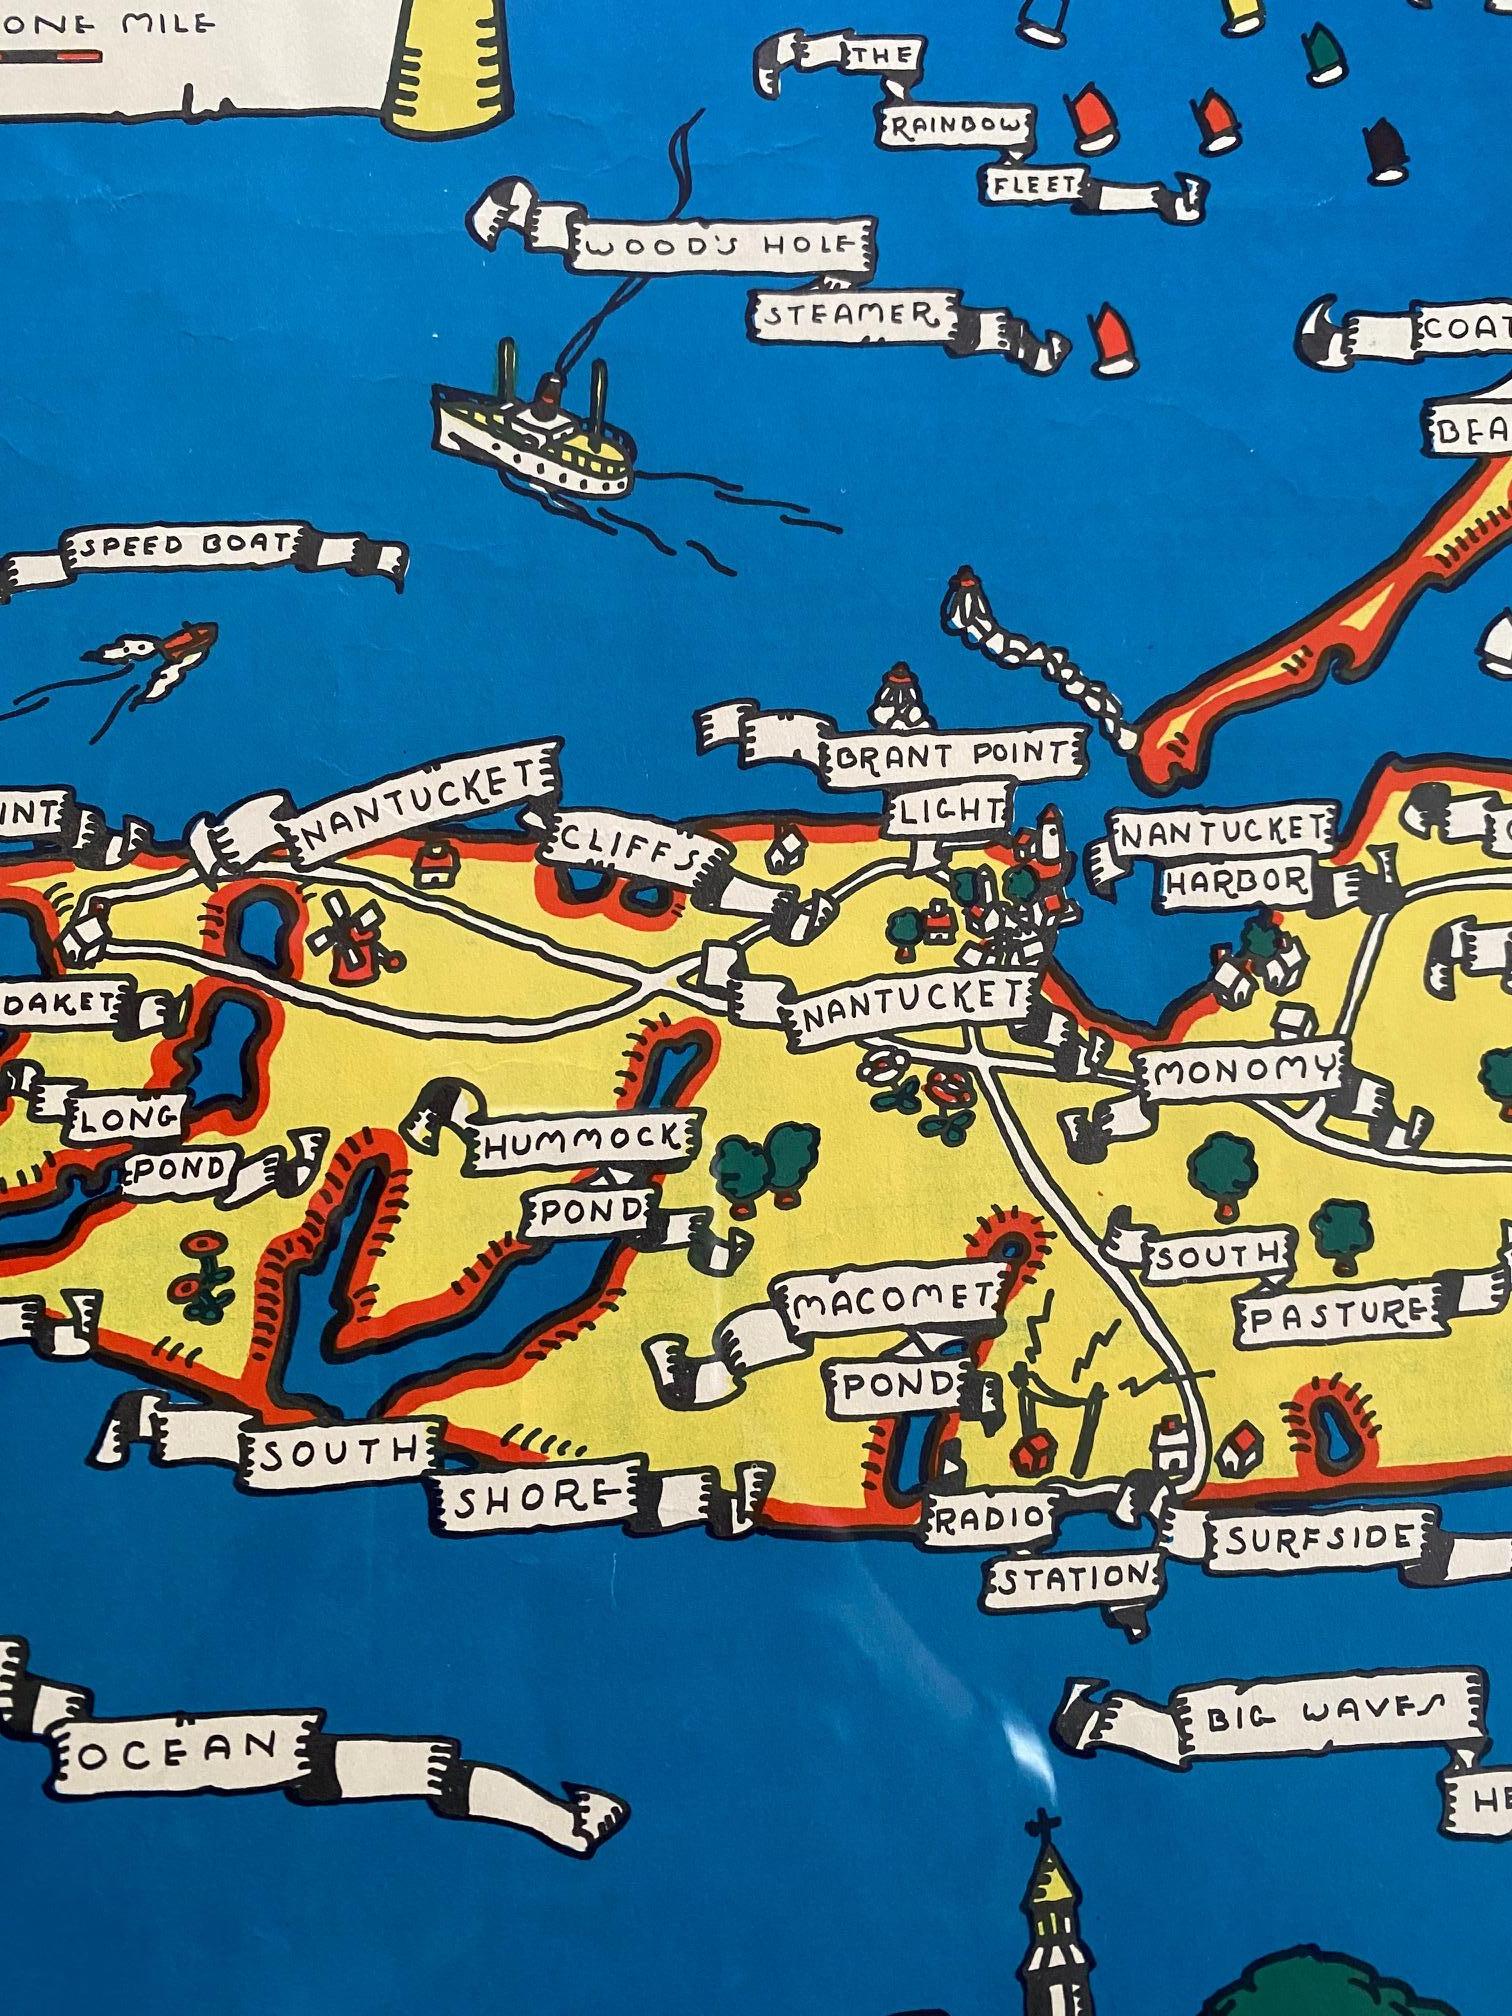 nantucket tourist map